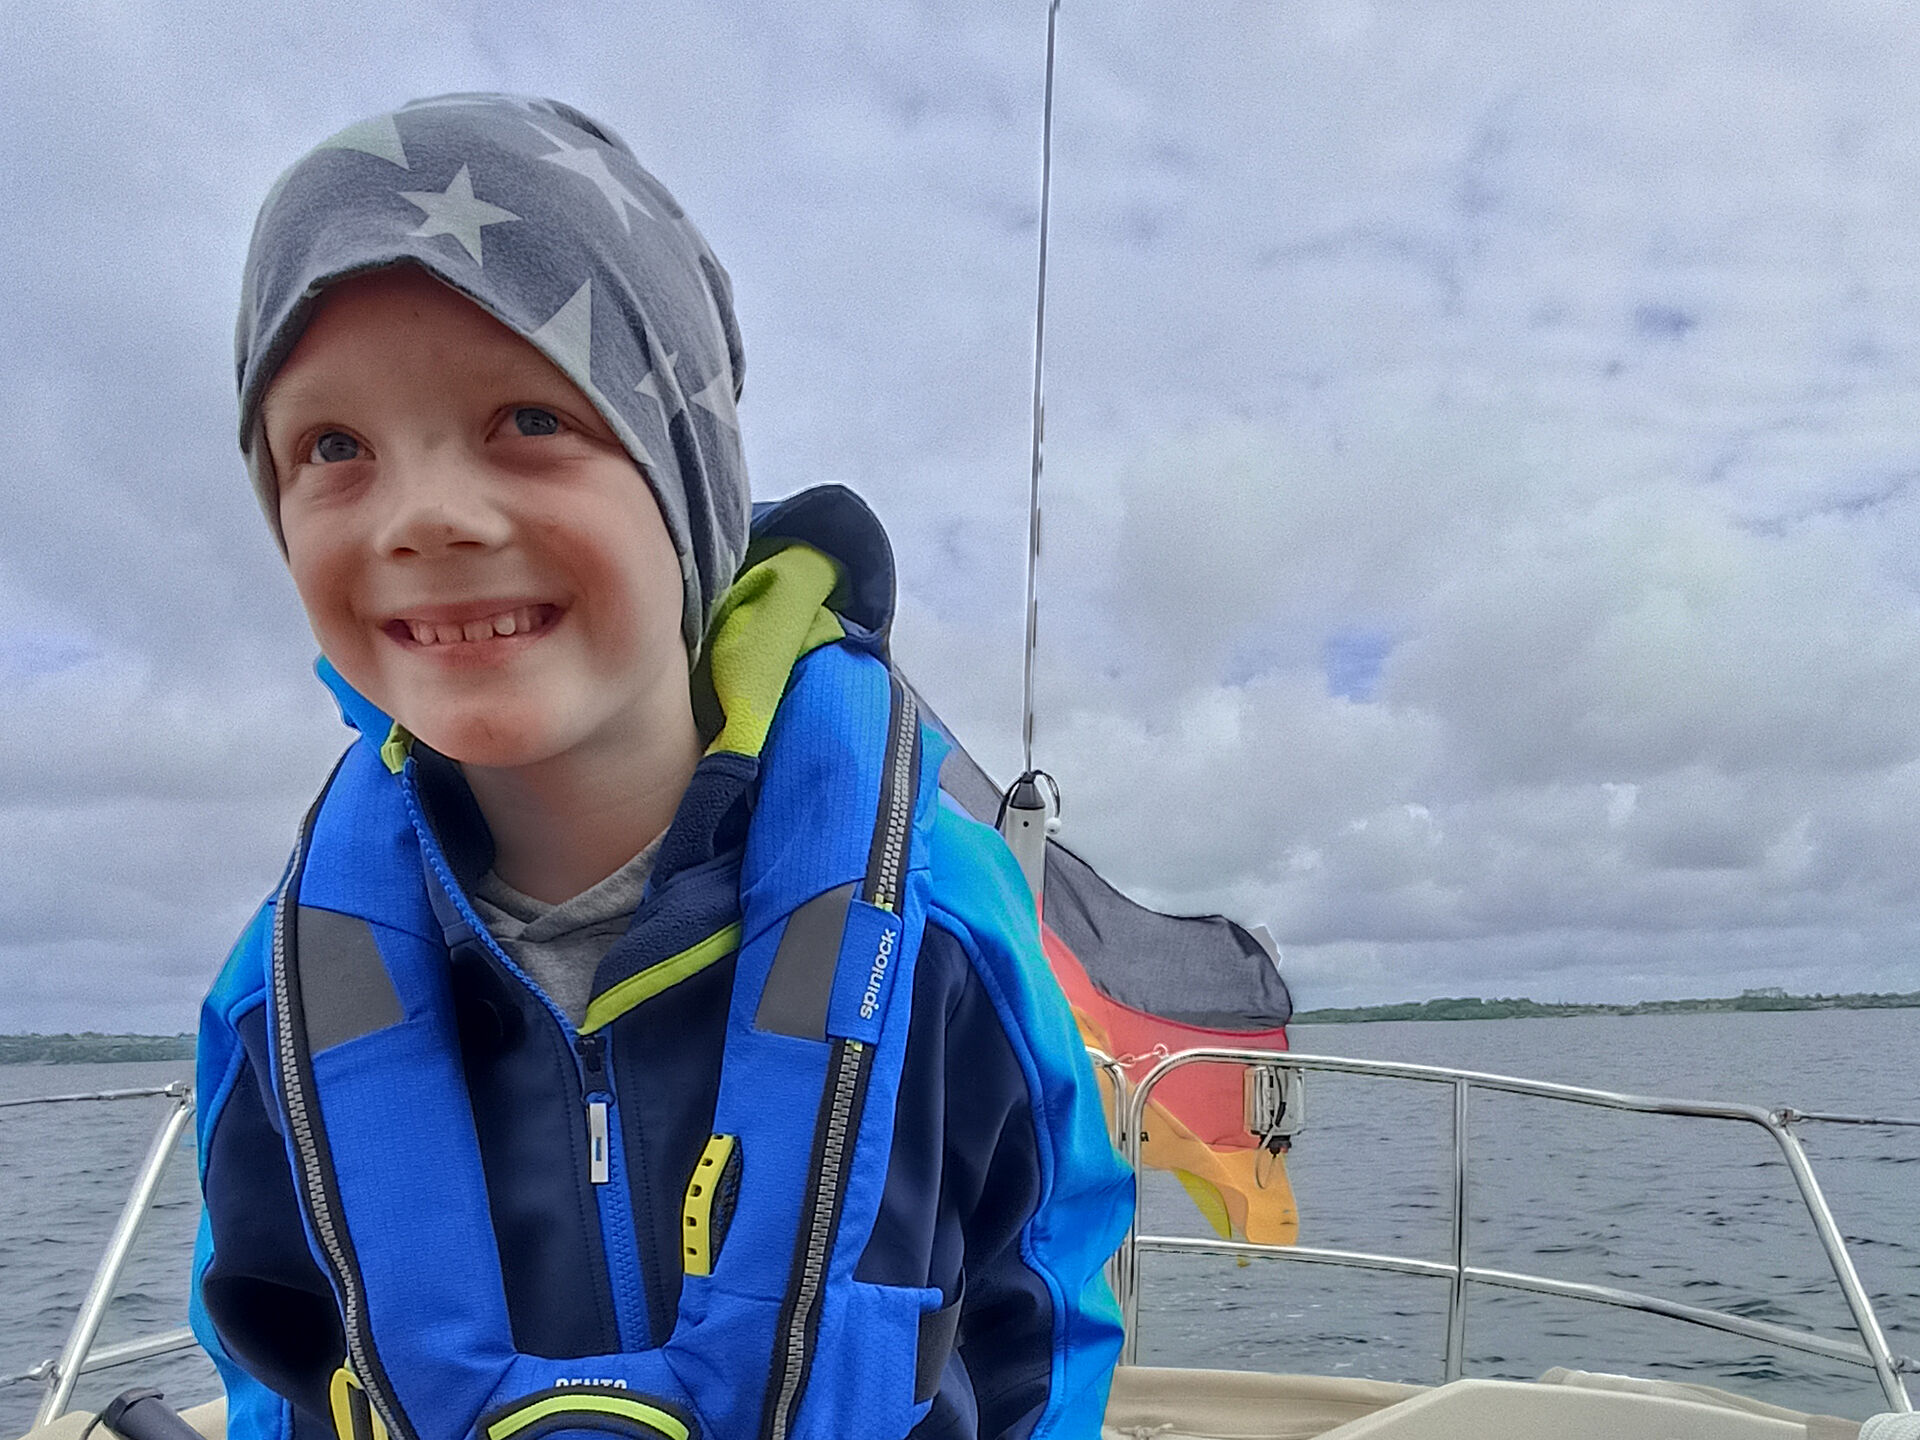 Neunjähriger Junge mit blauer Rettungsweste und grauem Stirnband bekleidet an Bord eines Segelbootes vor Wasser und bedecktem Himmel. 